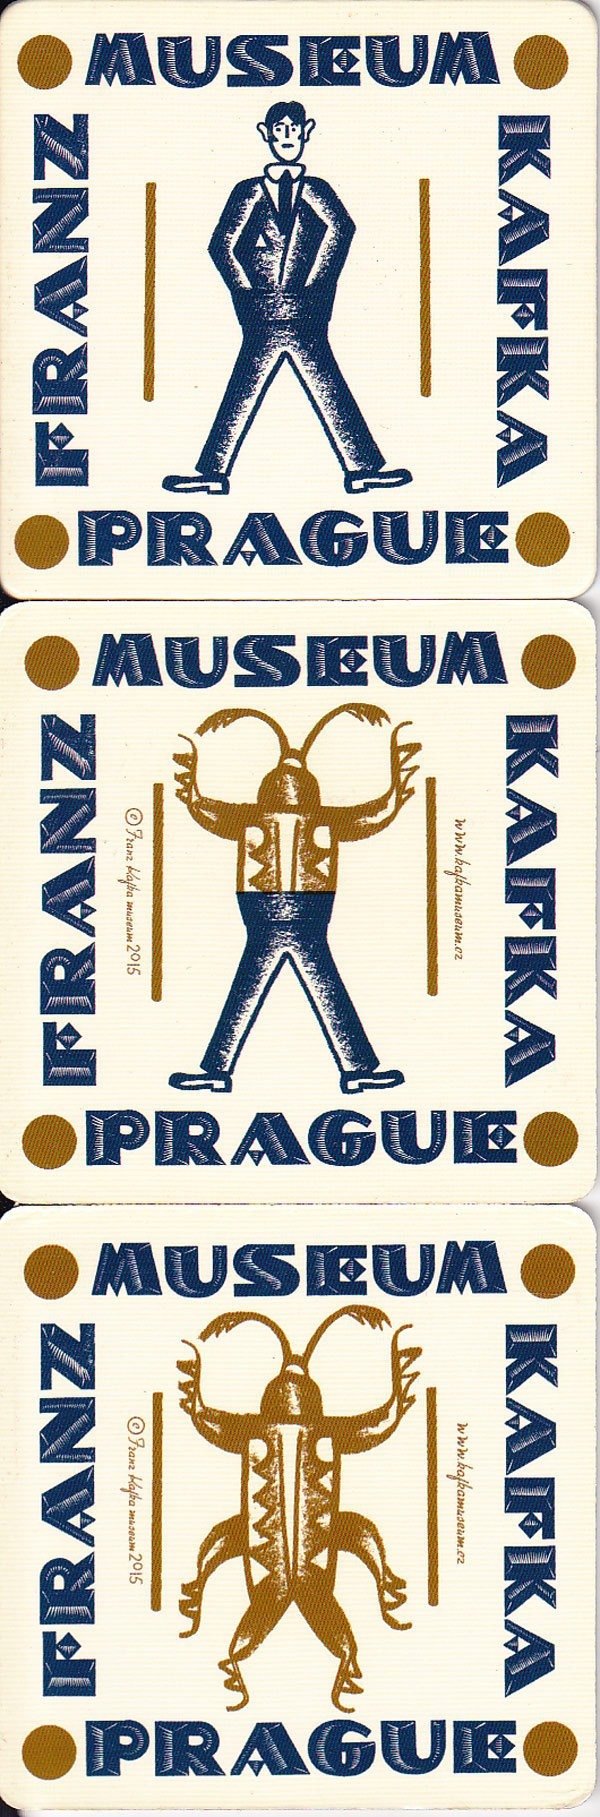 Franz Kafka Museum Prague by Smith, Jan edits